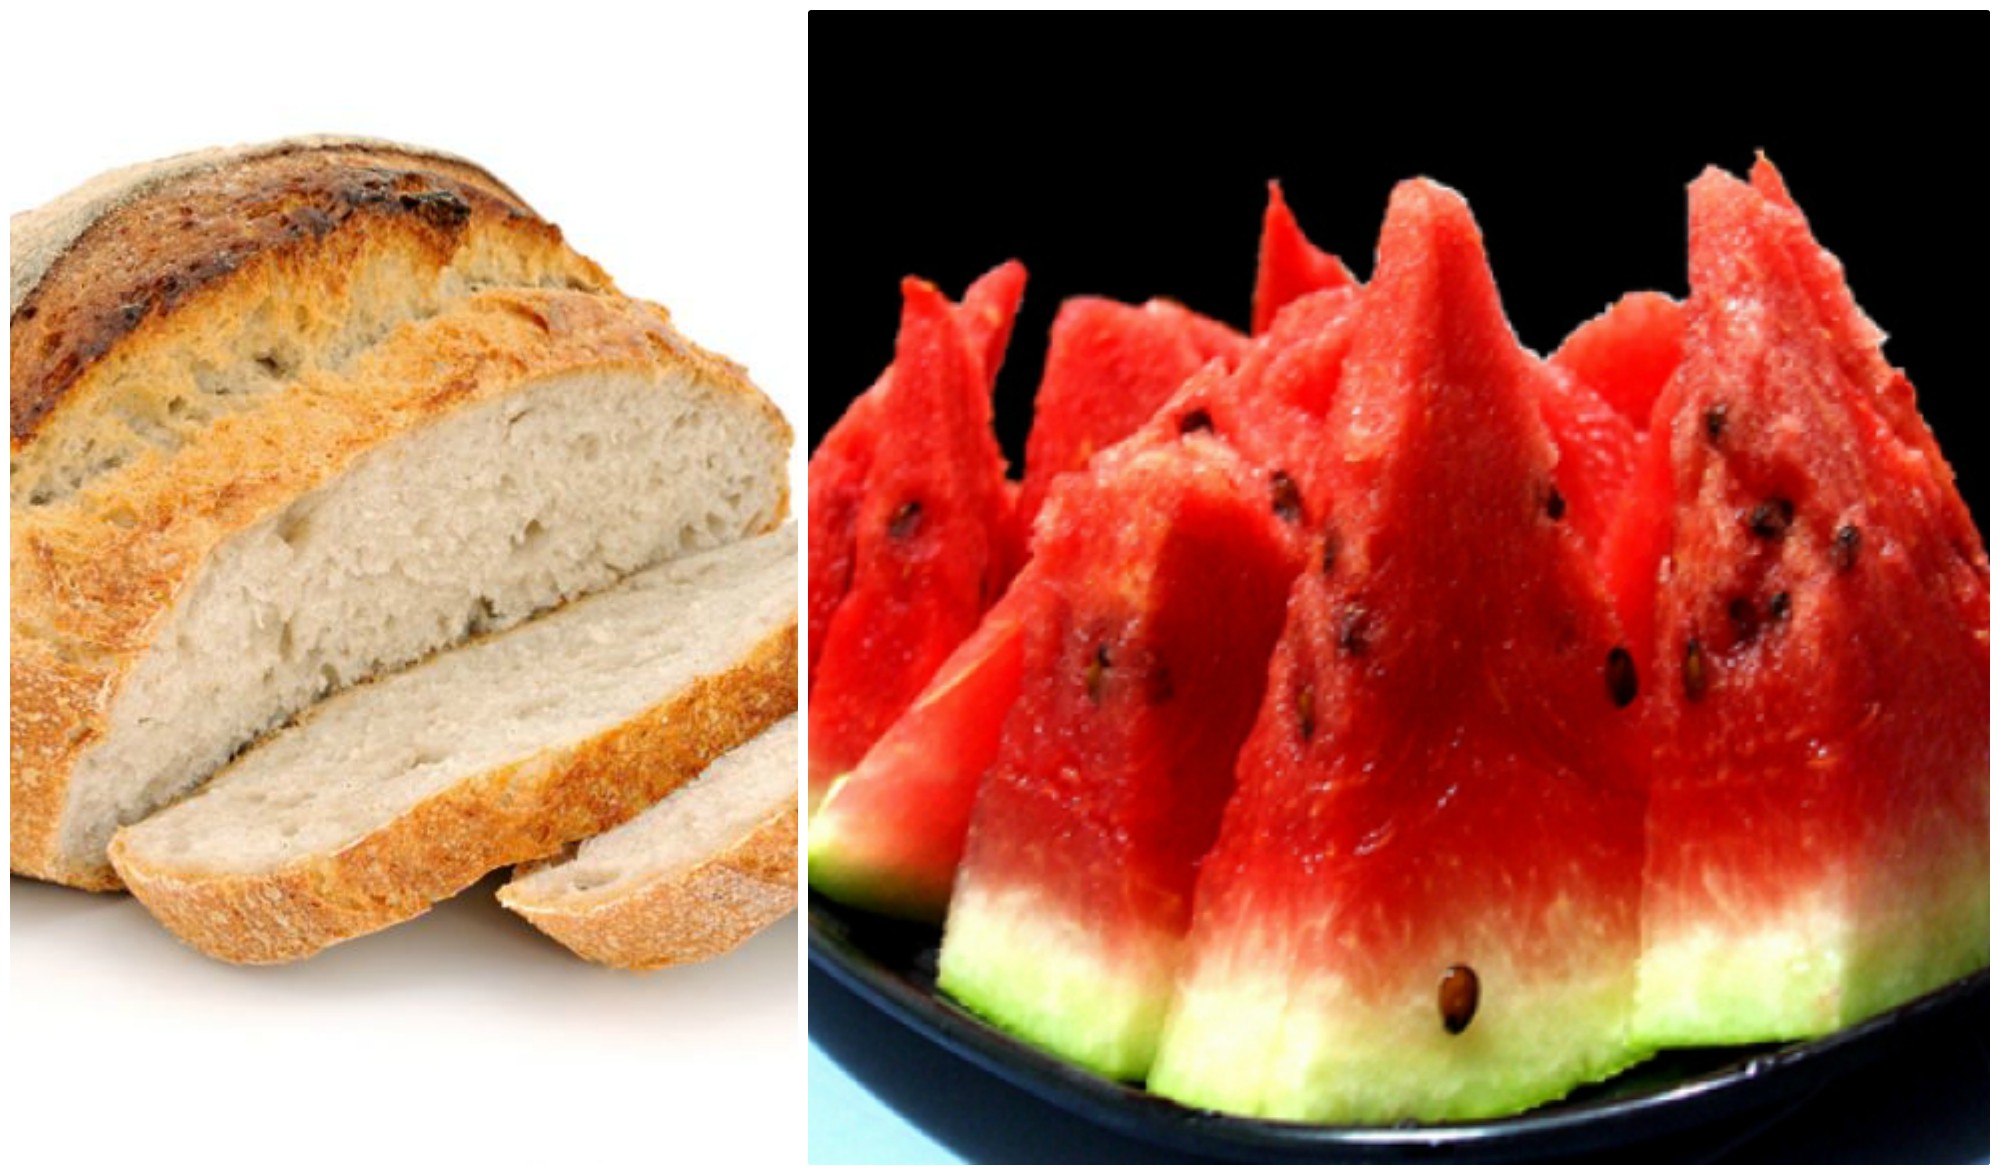 Nu mai mânca pepene roșu cu pâine. Uite ce se întâmplă în organismul tău atunci când faci această combinație!